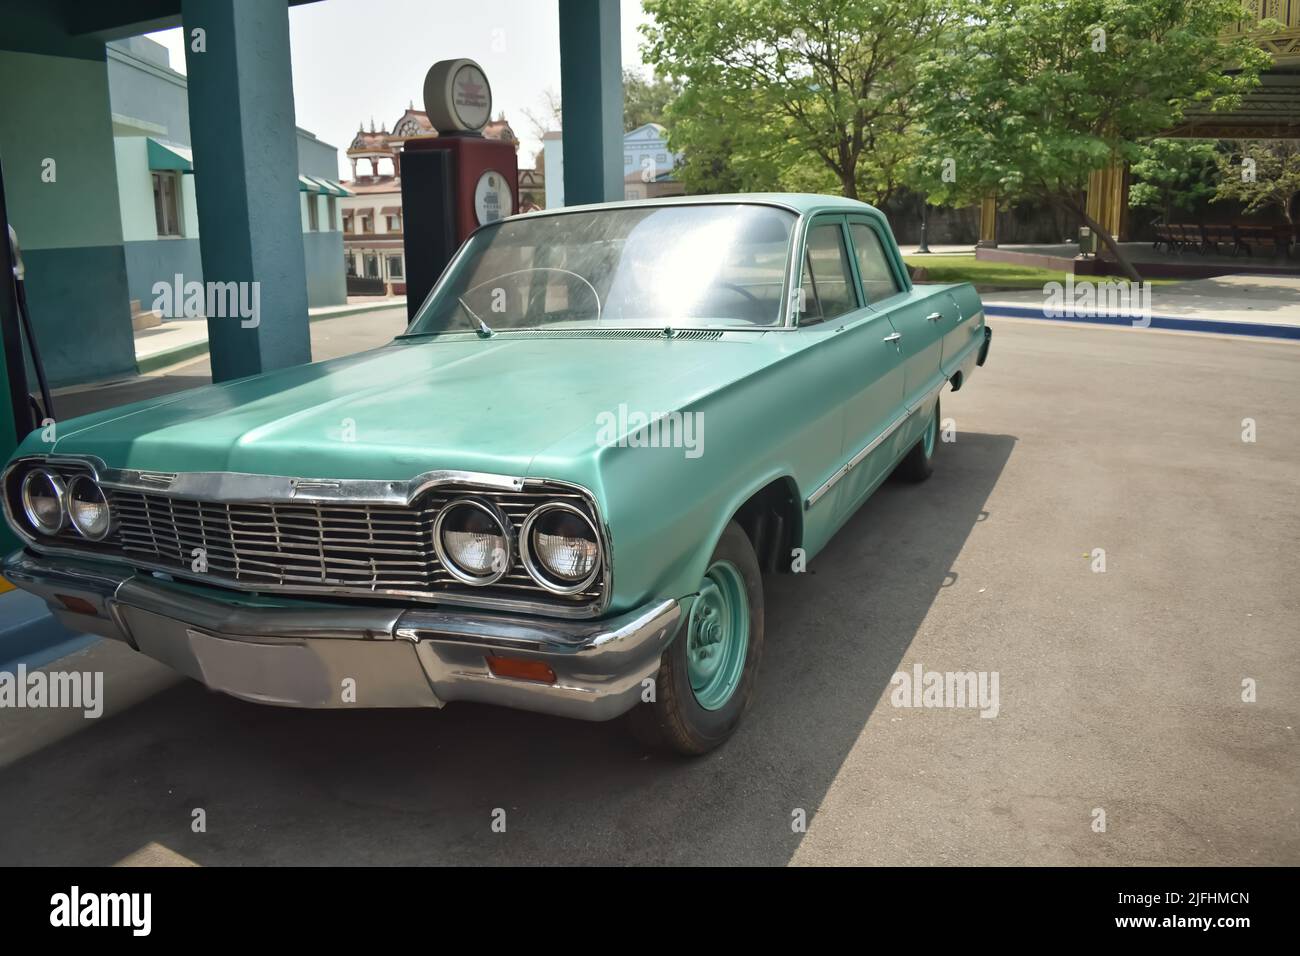 Une voiture de couleur vert américain à l'ancienne qui ressemble à l'Impala de Chevrolet garée près d'une voiture à essence sur fond vert. C'est une voiture d'époque Banque D'Images